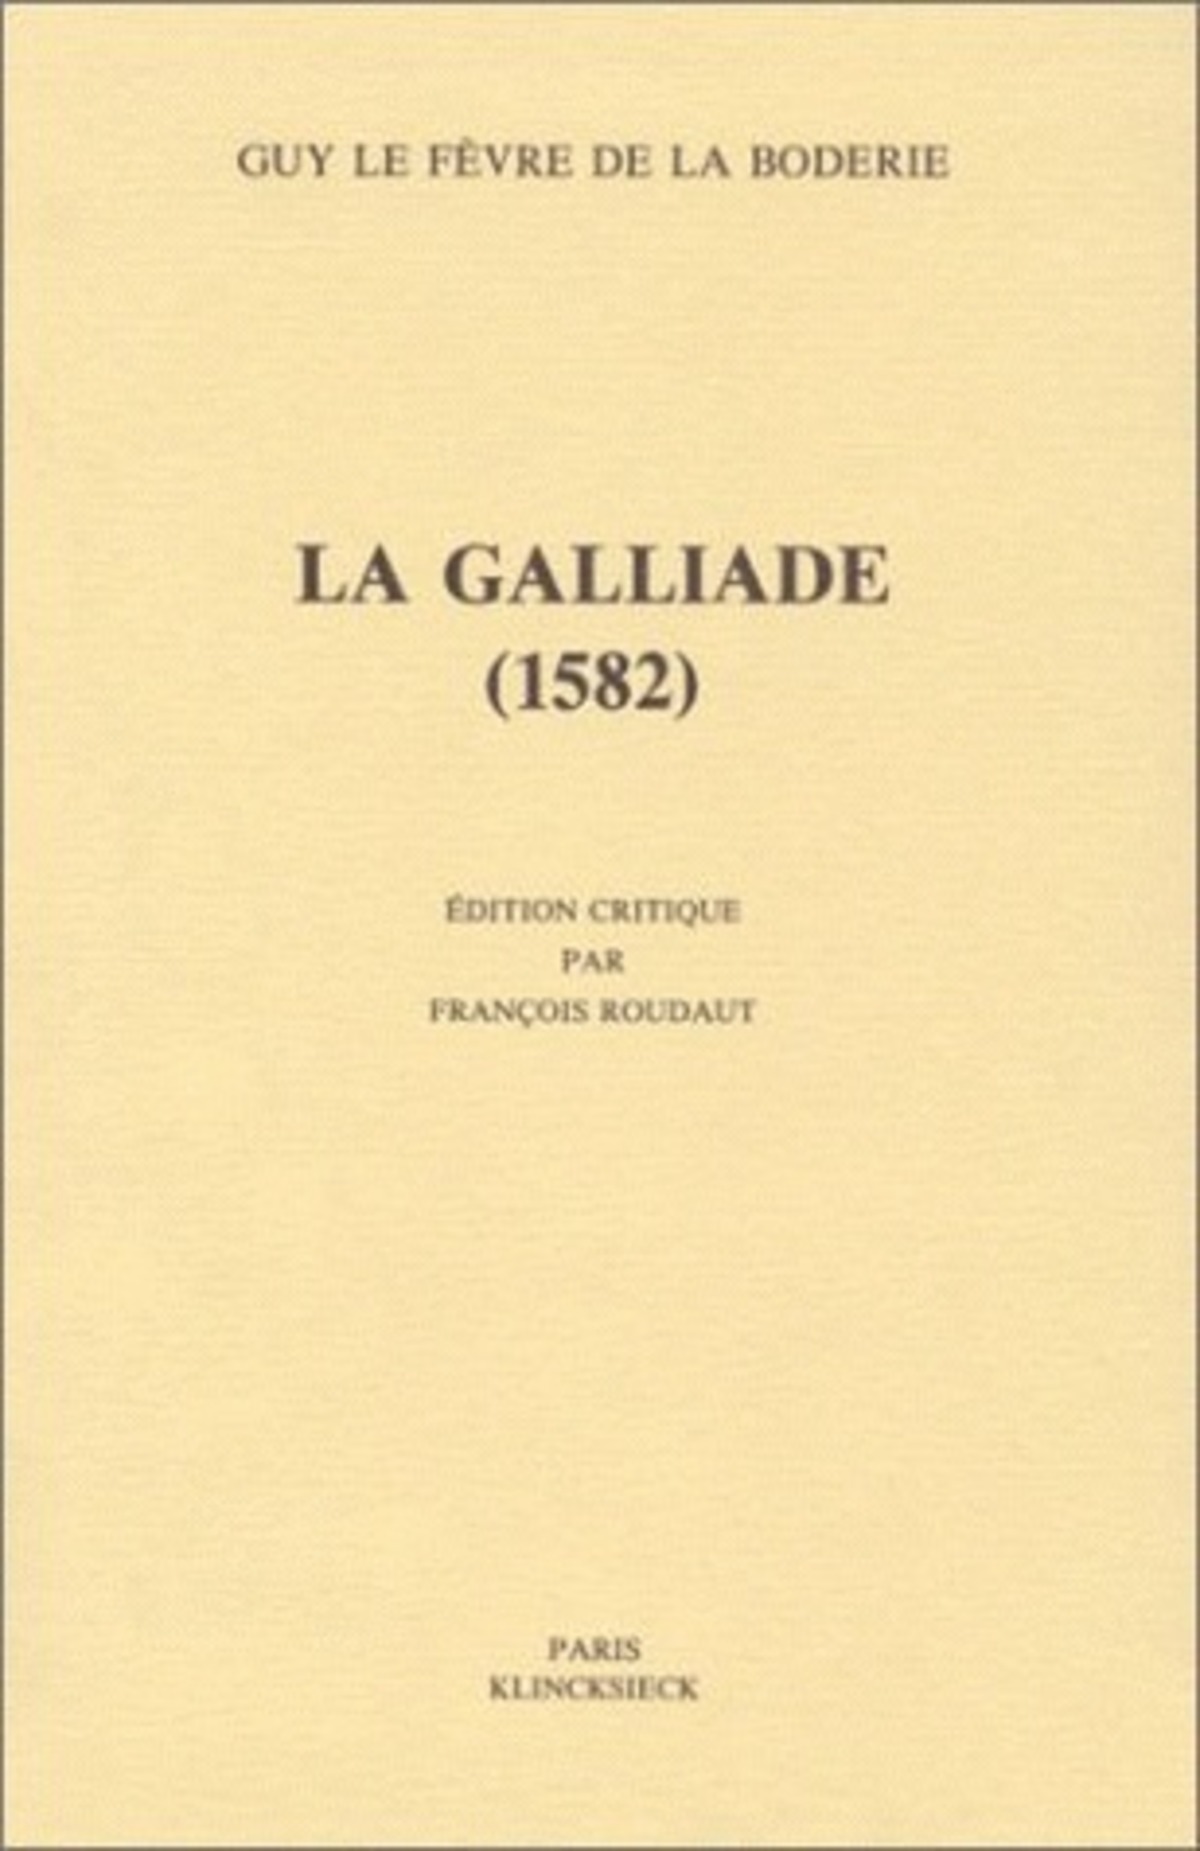 La Galliade